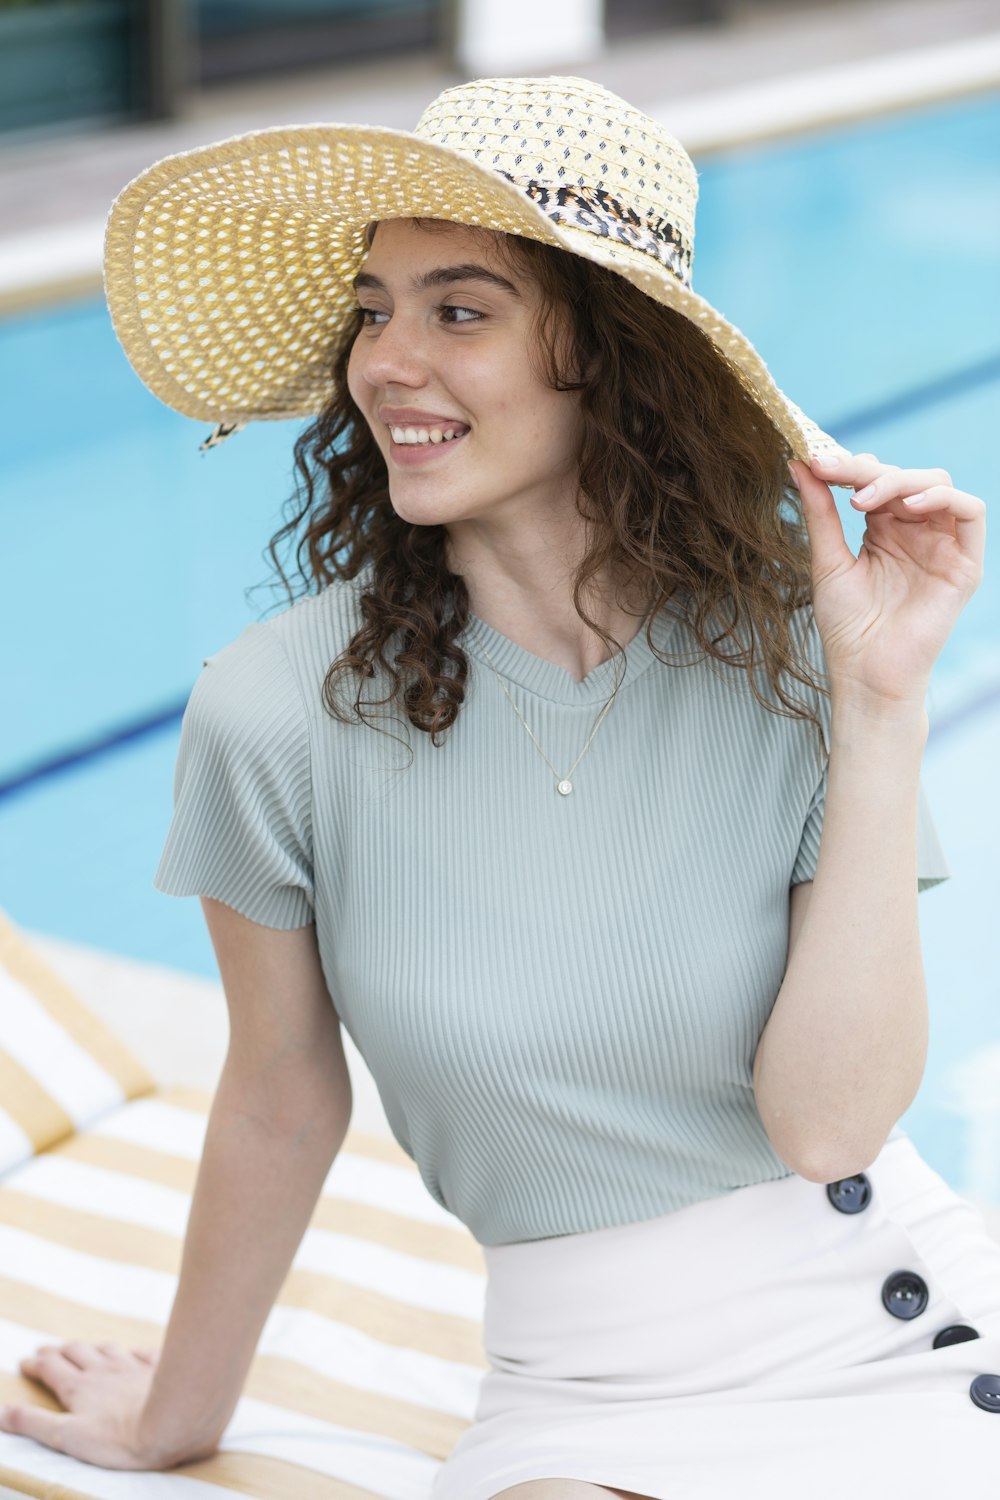 donna in abito a righe bianche e blu che indossa un cappello di paglia marrone